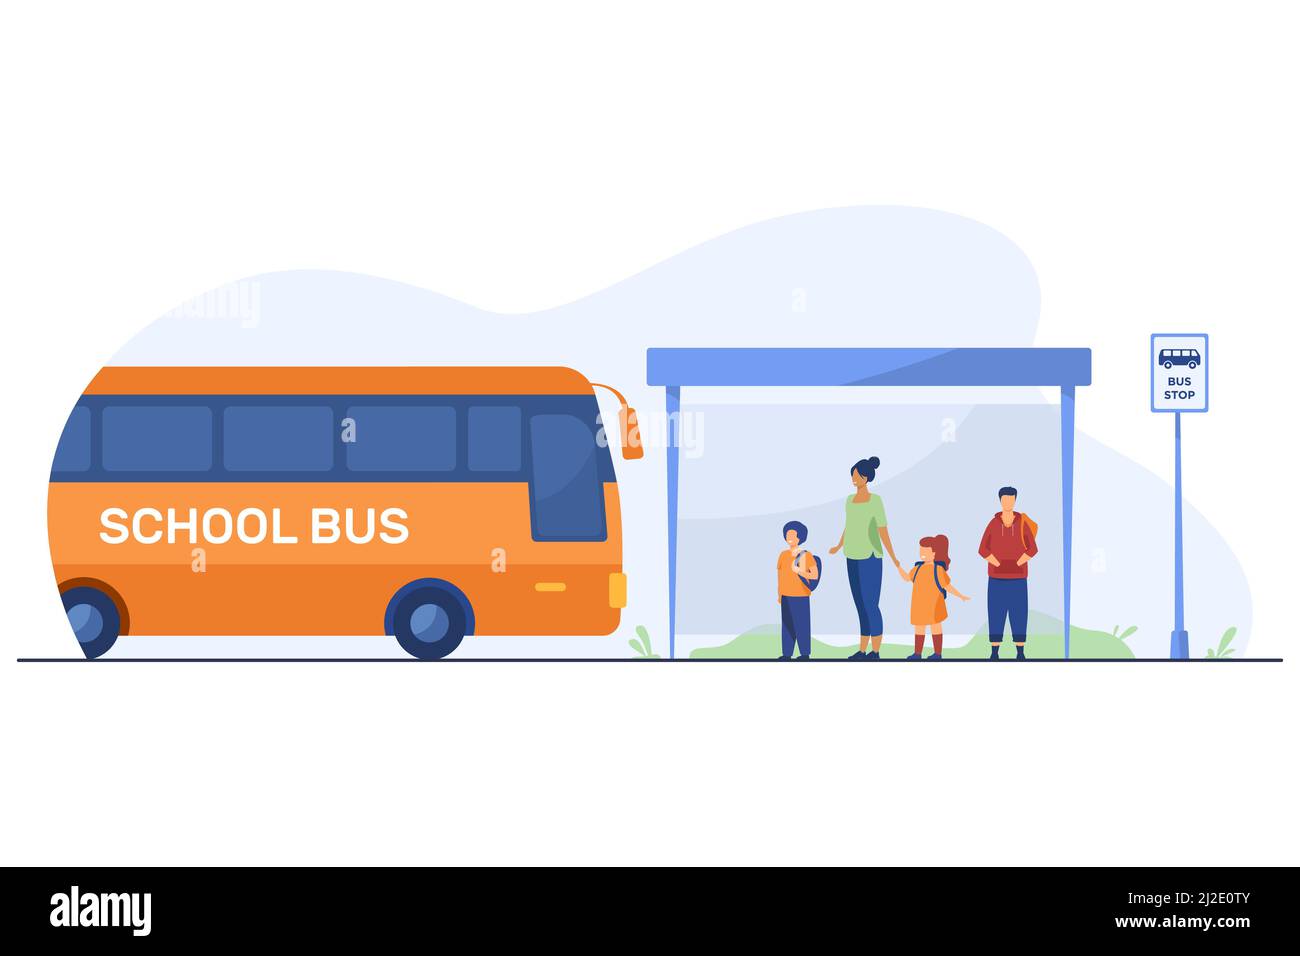 Kinder mit Lehrer warten an der Bushaltestelle auf den Bus. Schule, Fahrzeug, Kind flache Illustration. Transport- und Bildungskonzept für Banner, Website de Stock Vektor